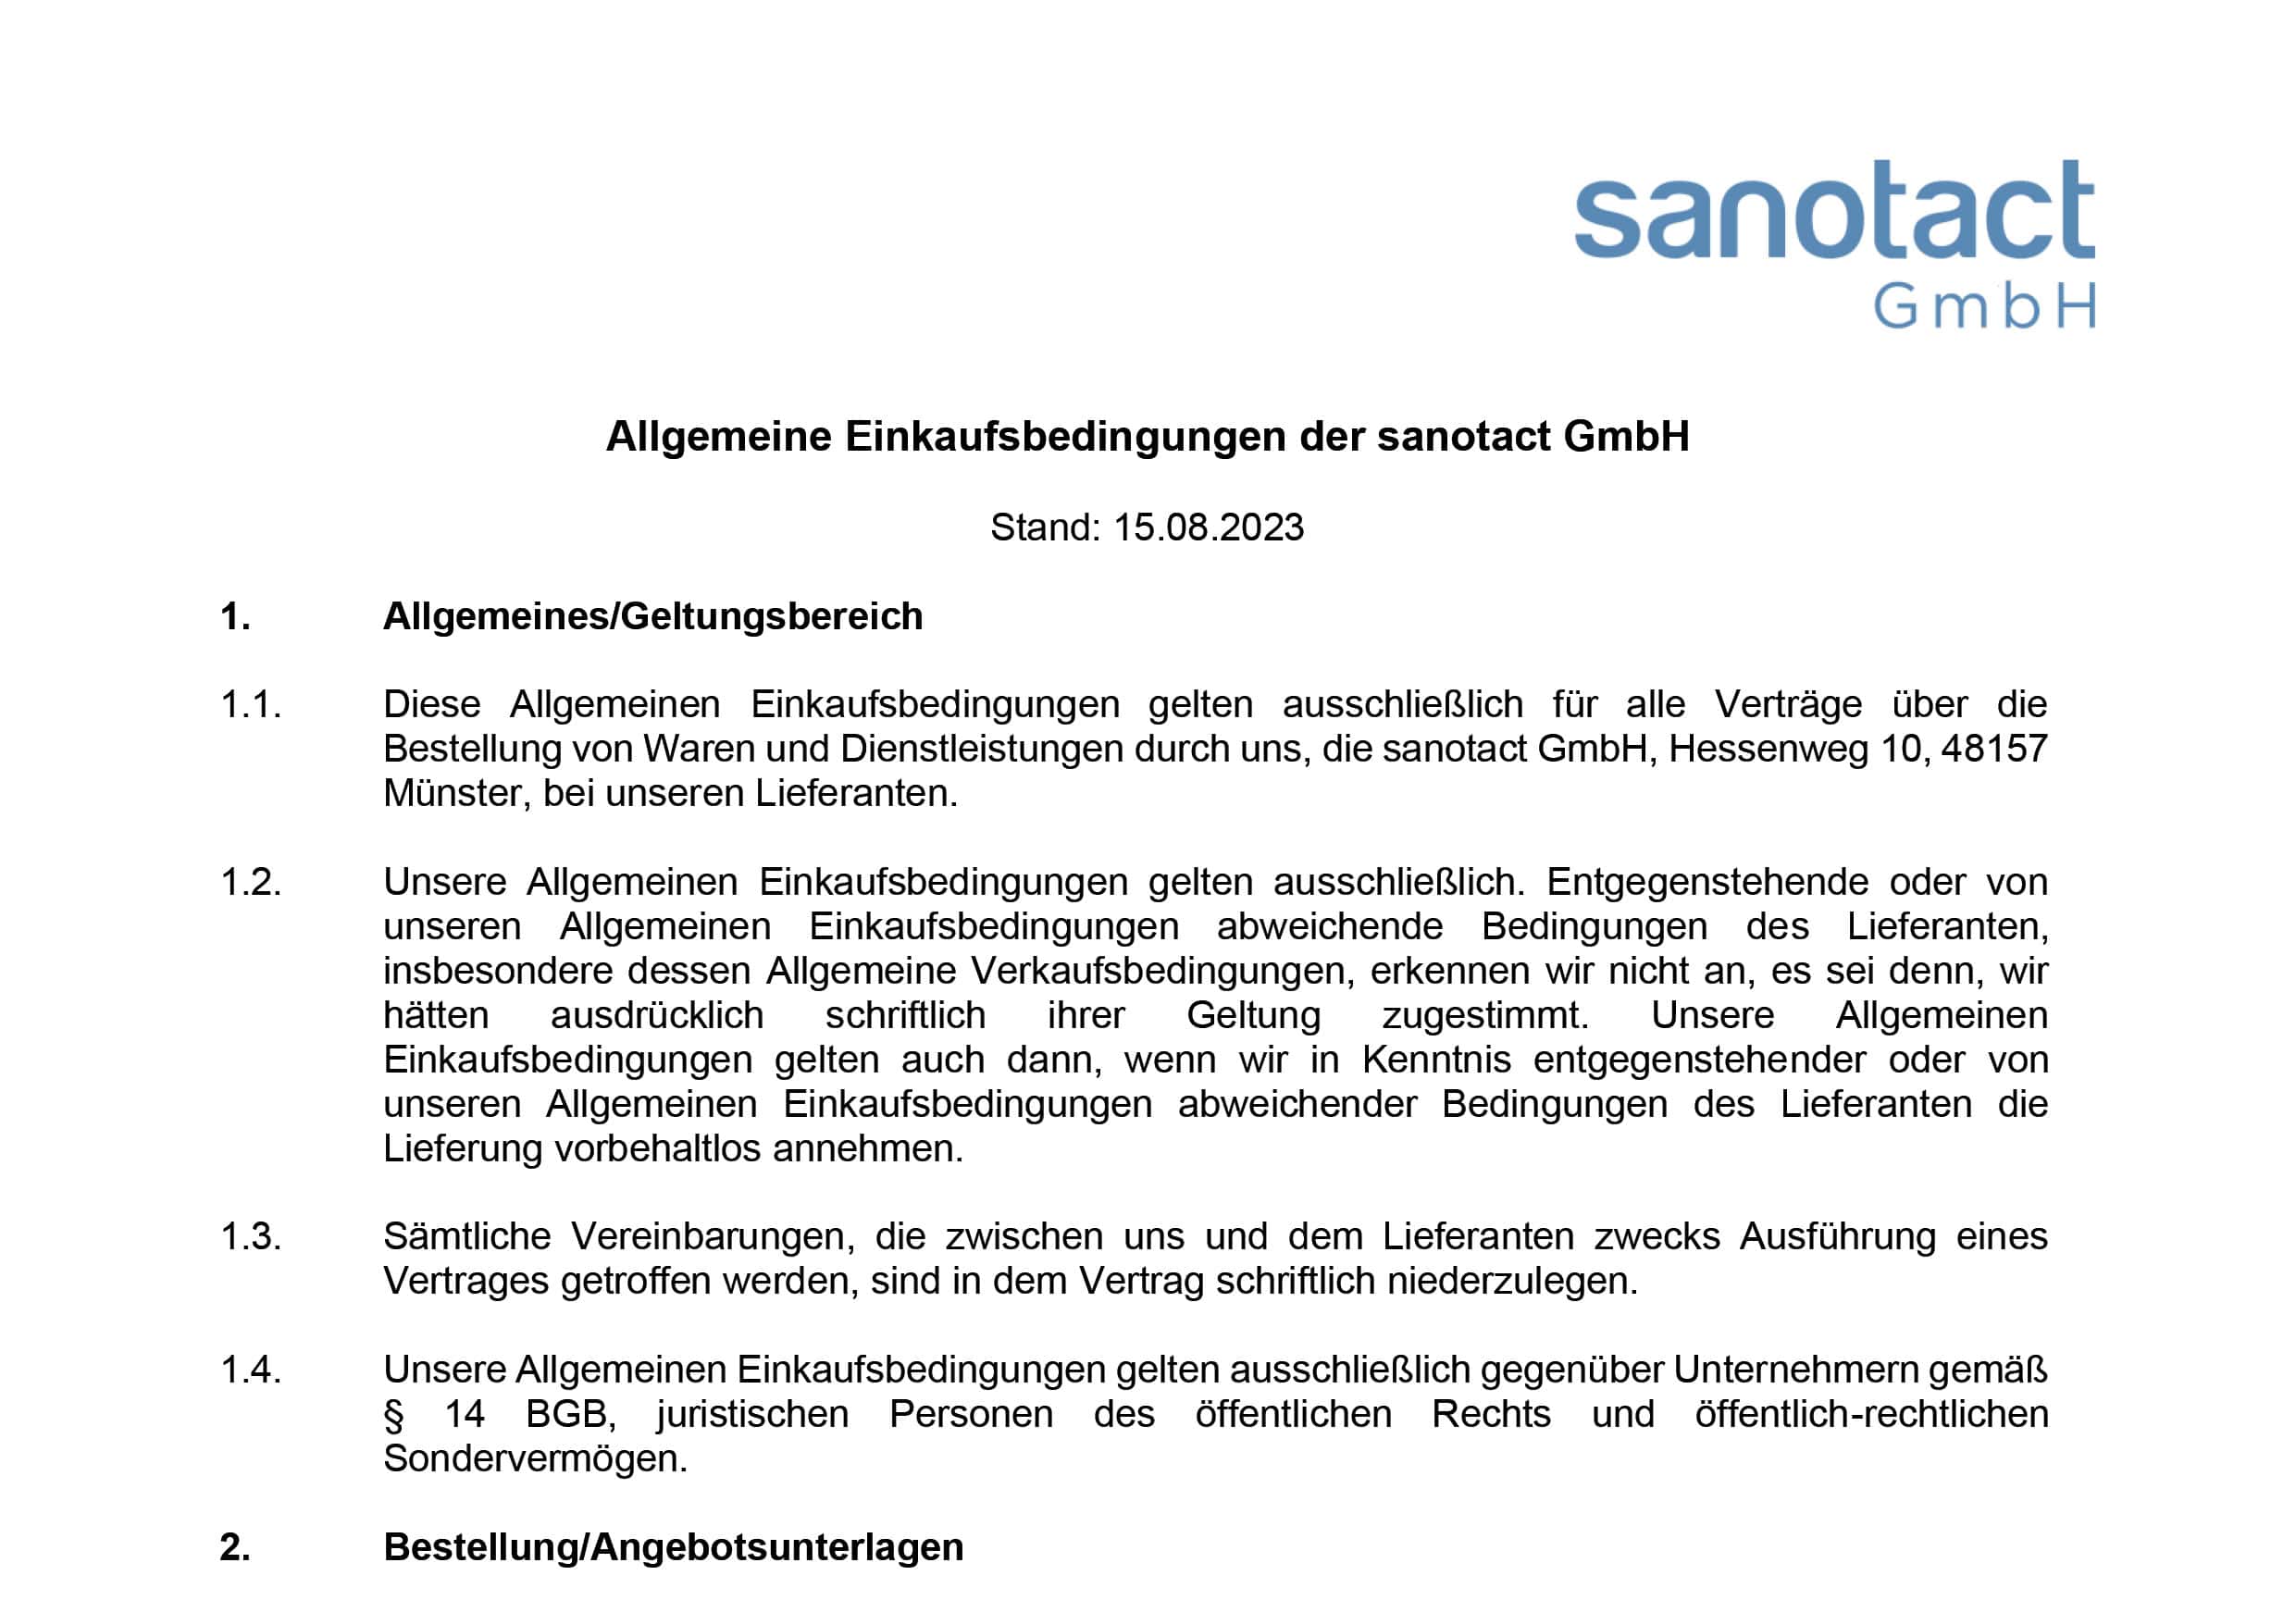 Allgemeine Einkaufsbedingungen der sanotact GmbH<br />
Stand: 15.08.2023